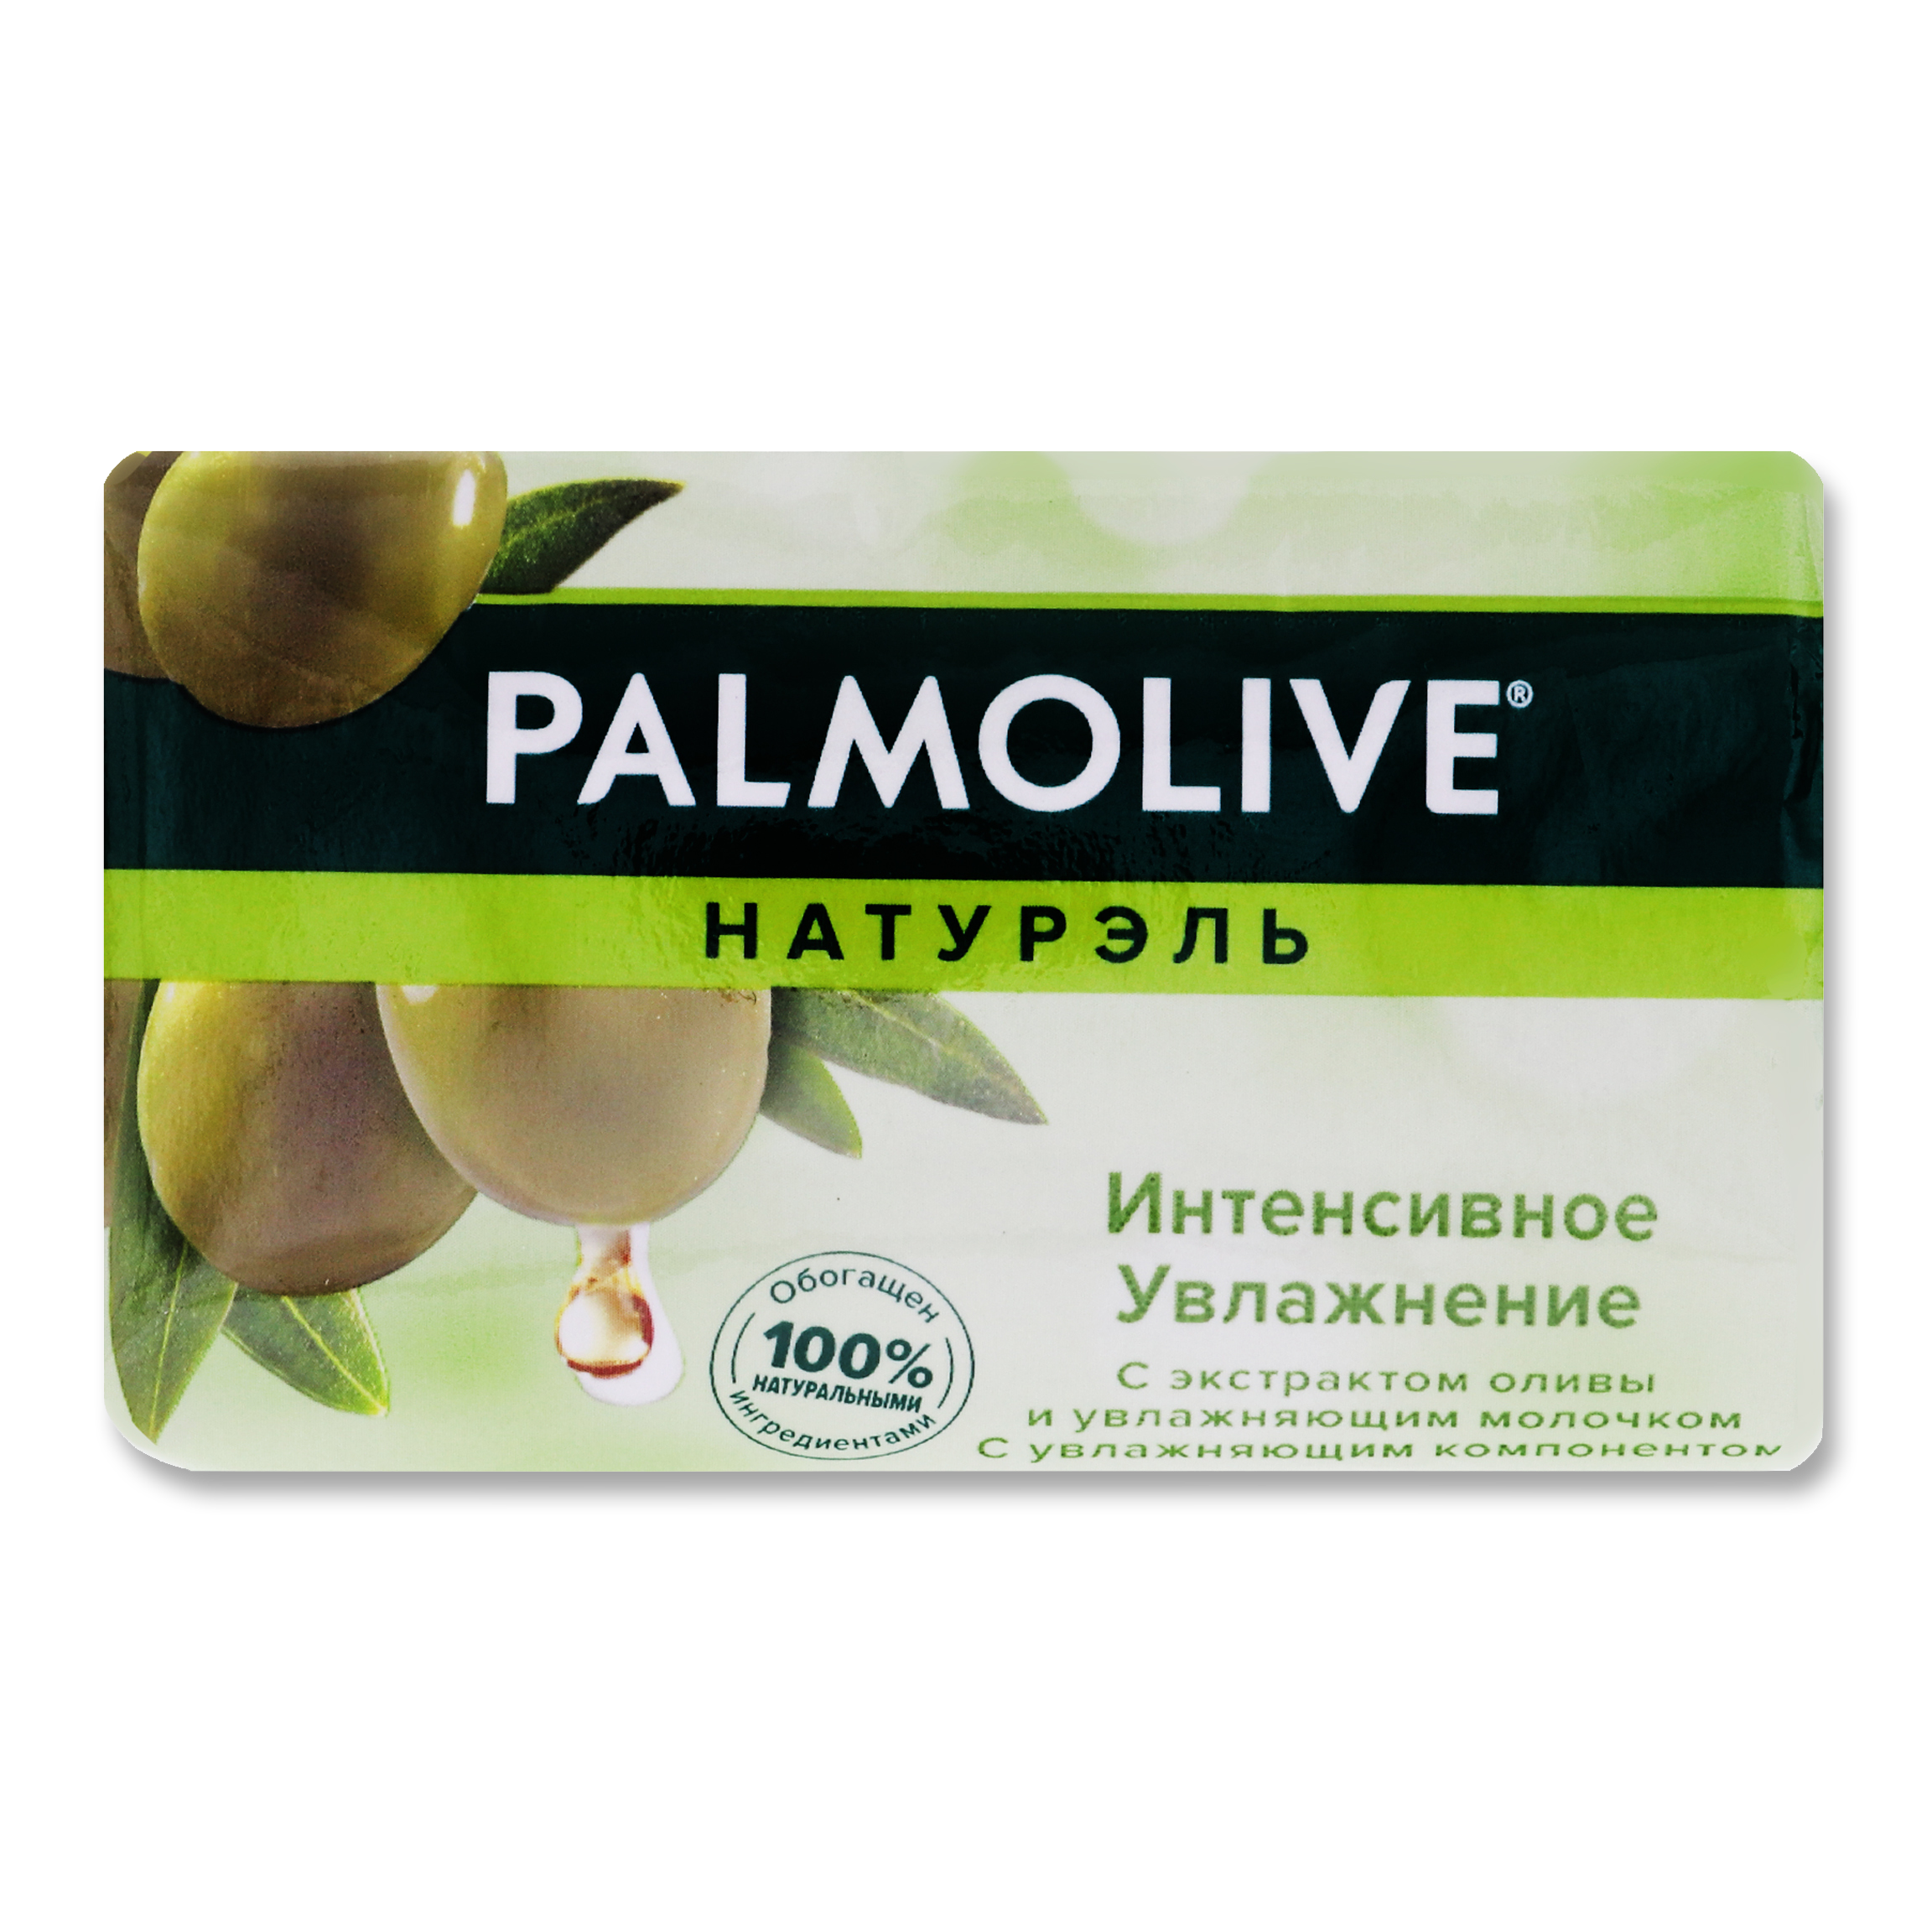 Мыло Palmolive Натурэль Интенсивное увлажнение с экстрактом оливы и увлажняющим молочком 90г